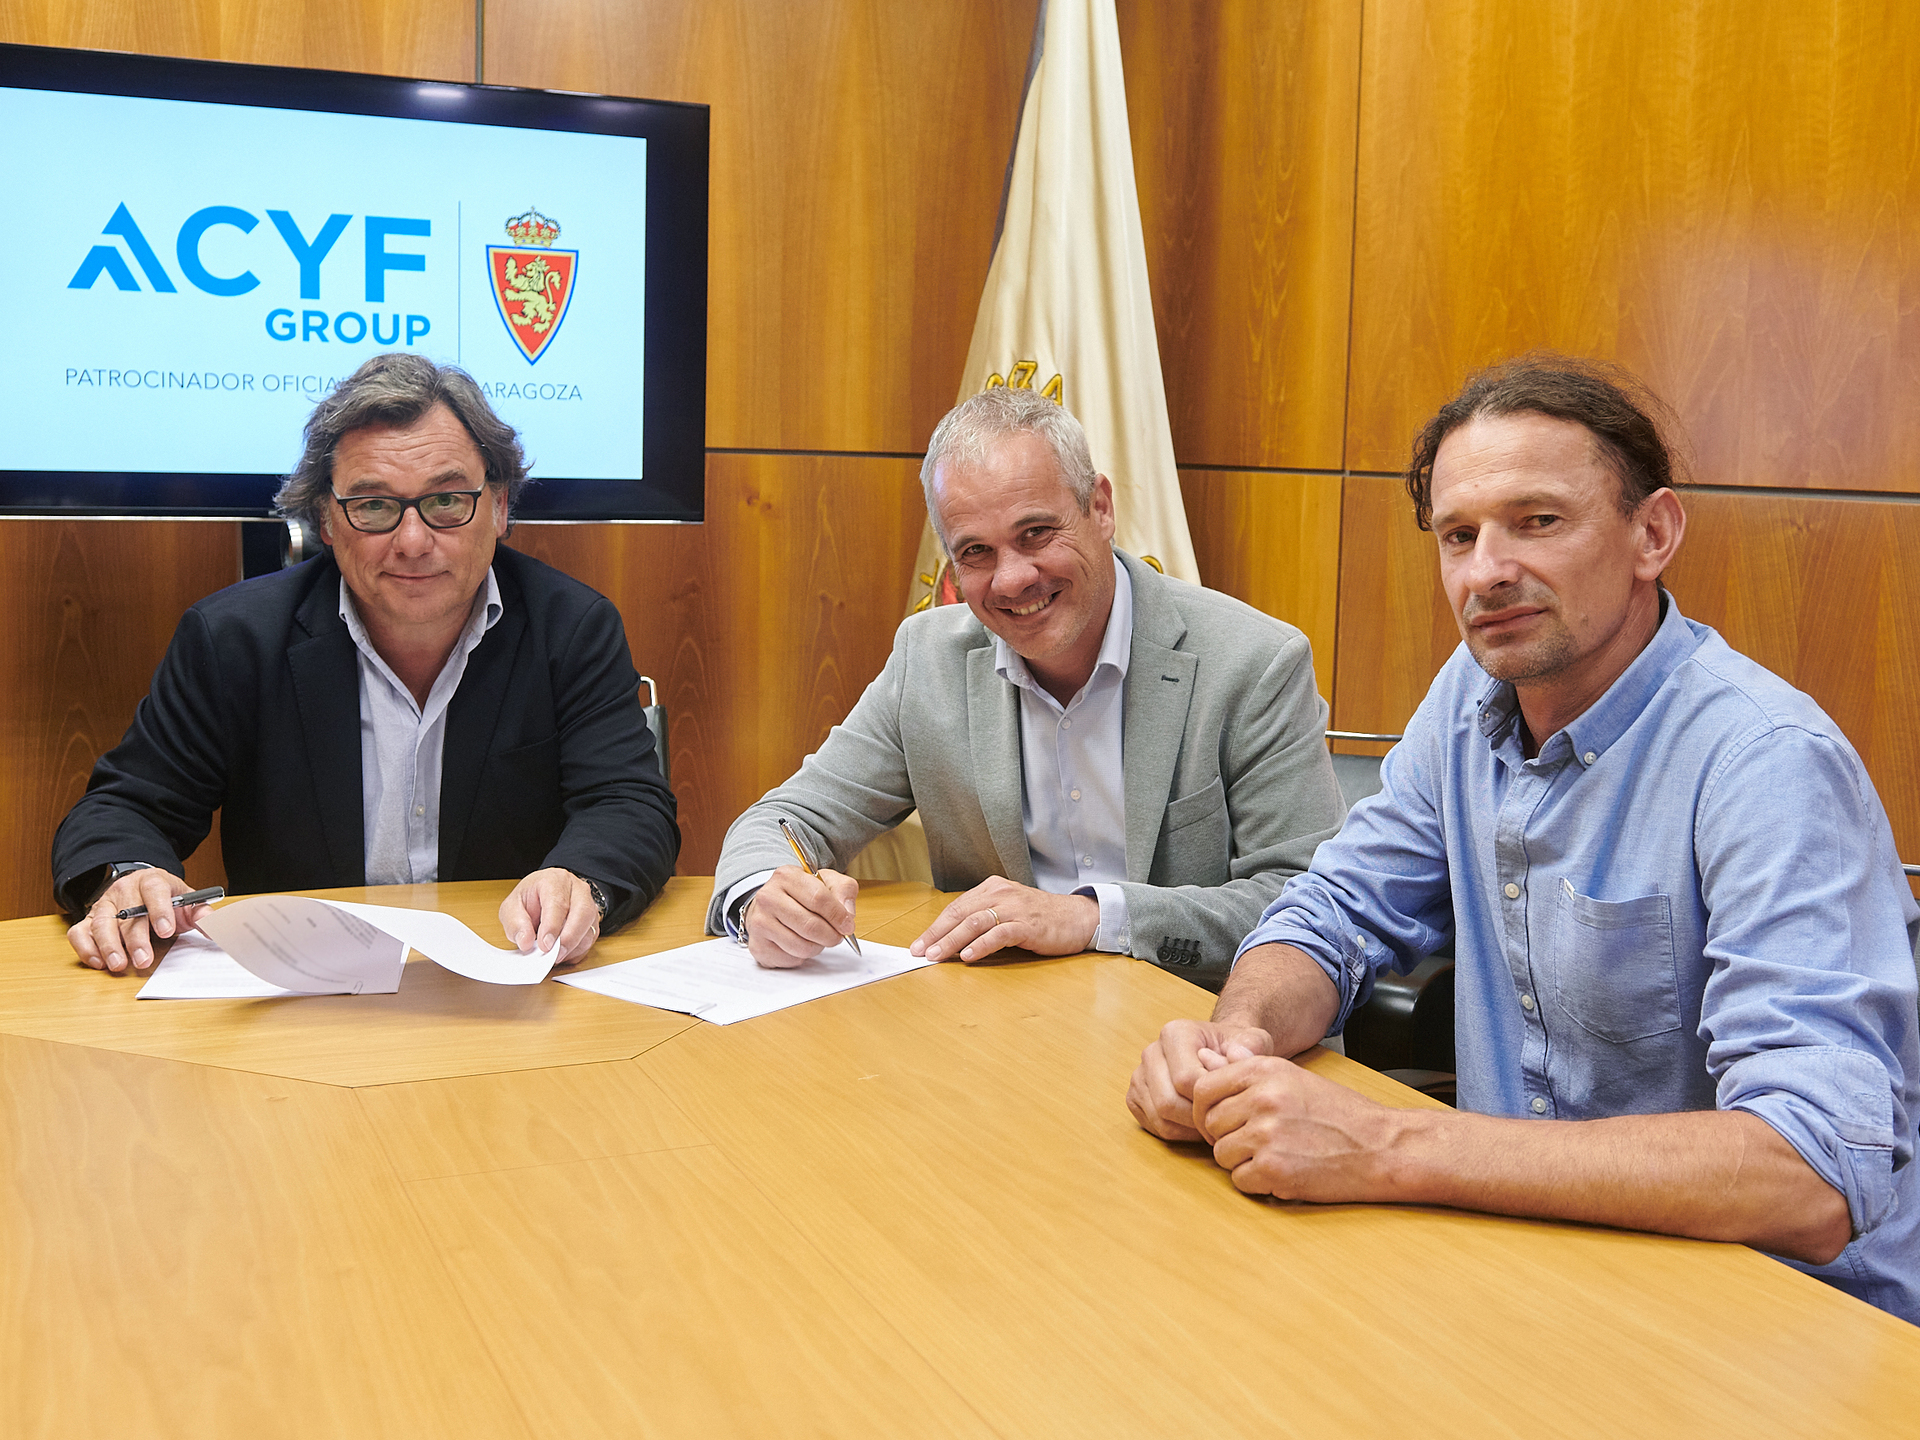 ACYF Group nuevo patrocinador oficial del Club